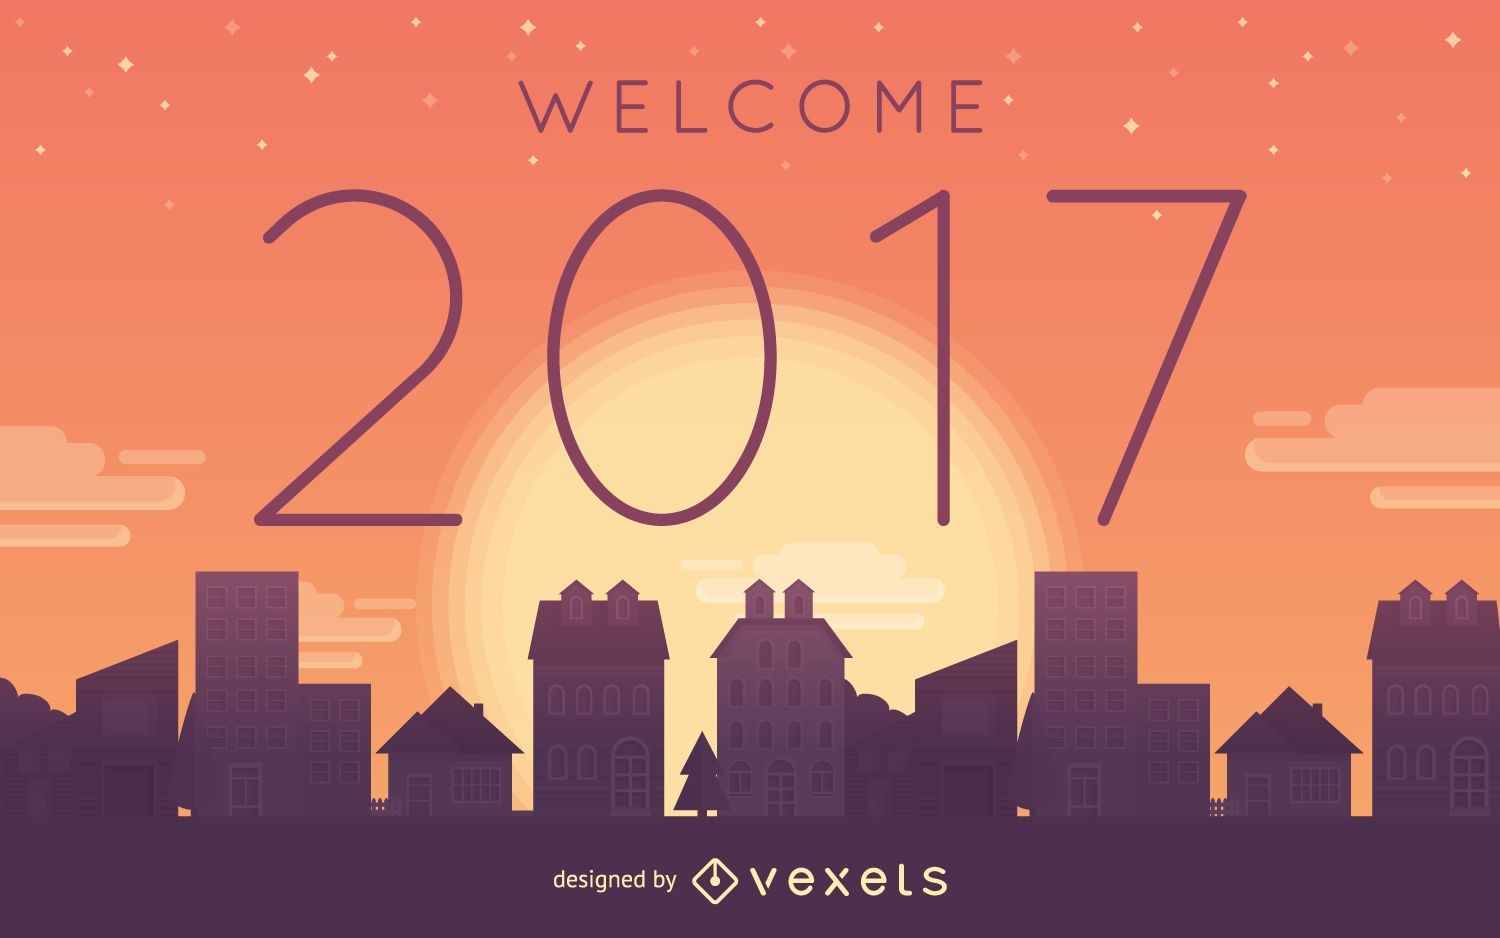 Cartel de bienvenida al atardecer 2017